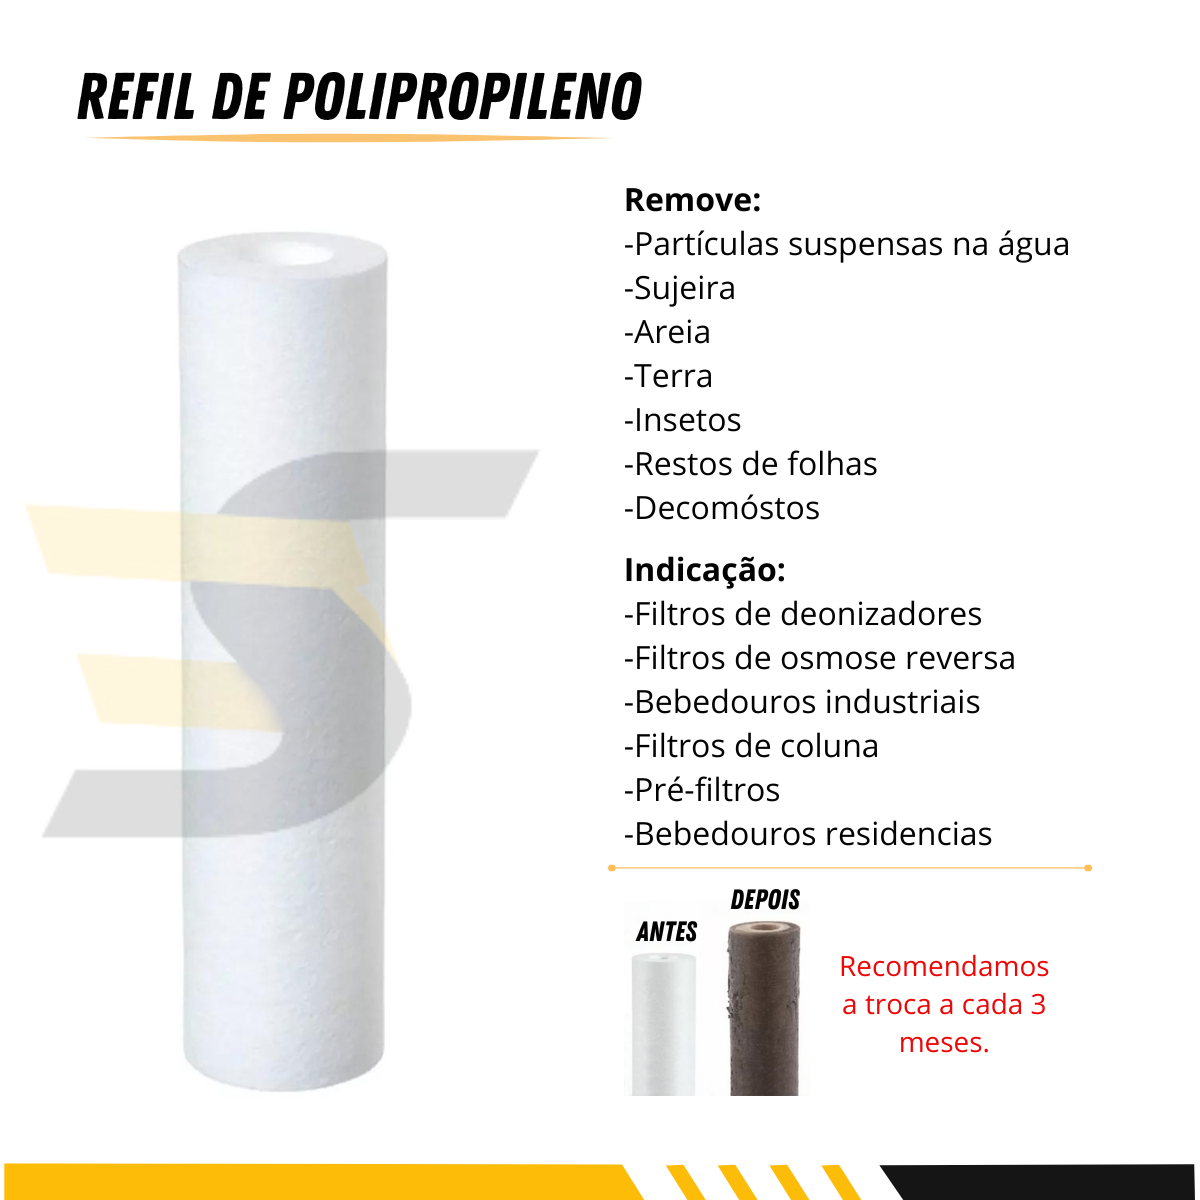 Refil Polipropileno para Filtro Snelfilter Sn-3103/pp-5m 10 Micra 10un - 2